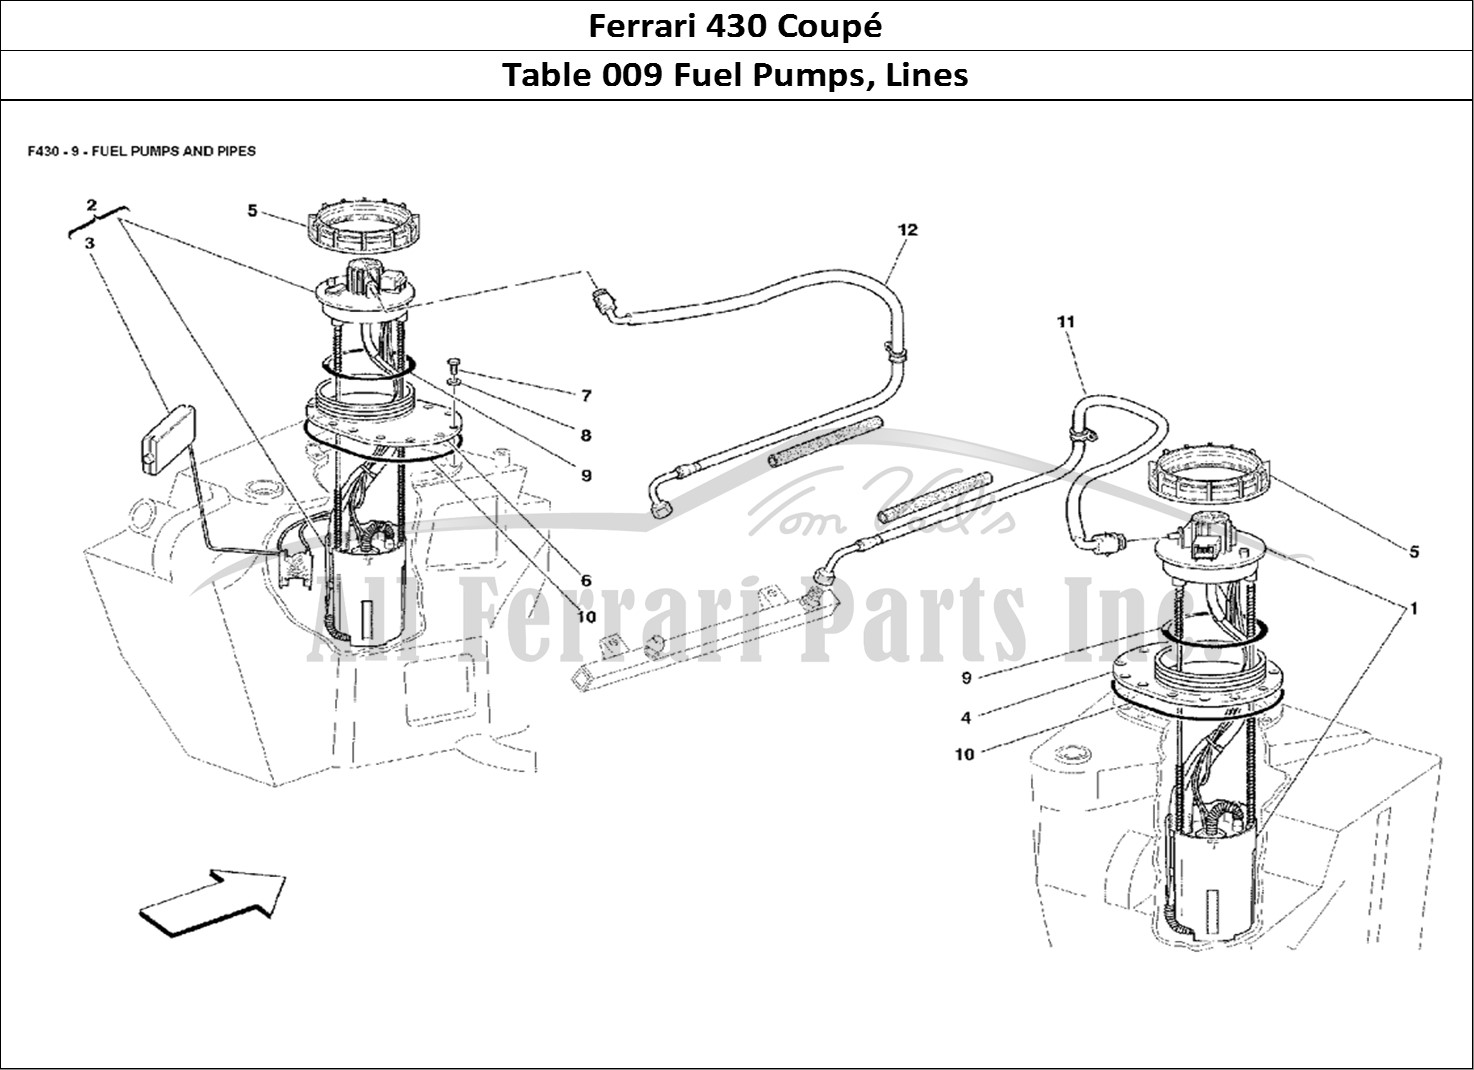 Ferrari Parts Ferrari 430 Coup Page 009 Fuel Pumps and Pipes